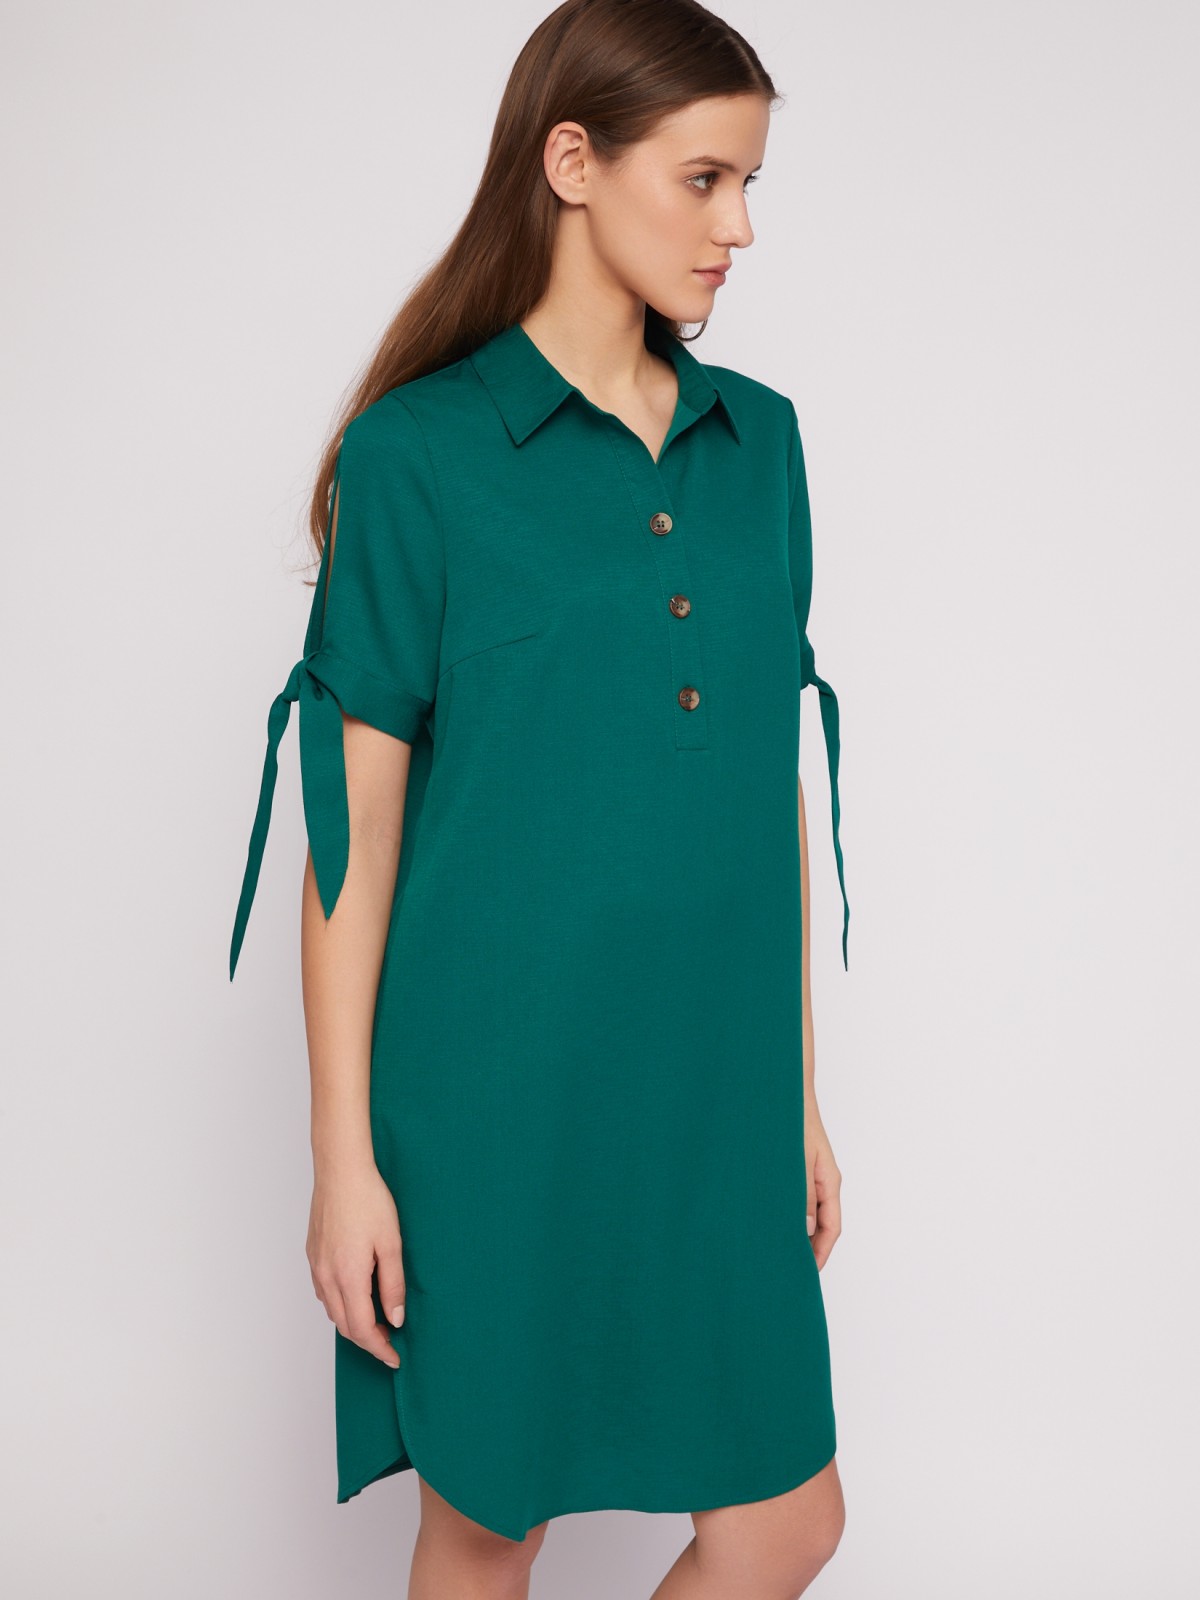 Платье-рубашка мини с акцентом на рукавах zolla 024218239333, цвет темно-зеленый, размер XXXL - фото 1